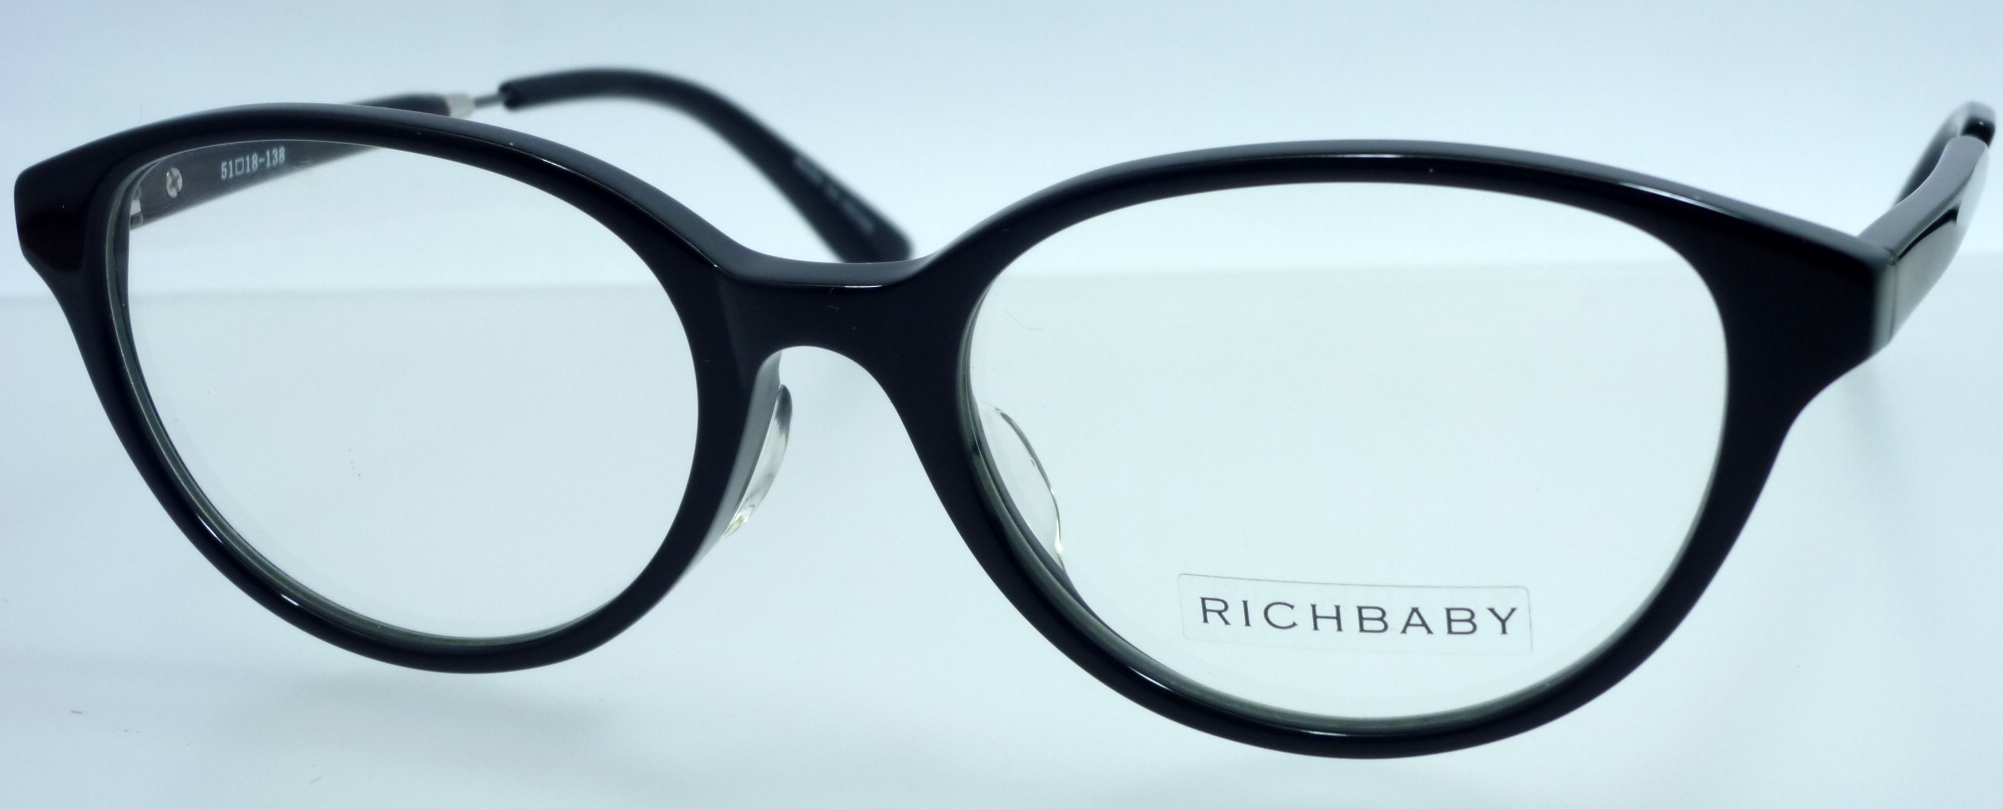 メガネ 眼鏡 薄型非球面度つきレンズセット RICHBABY メガネ ボストン  RB5008 メガネフレーム レンズセット